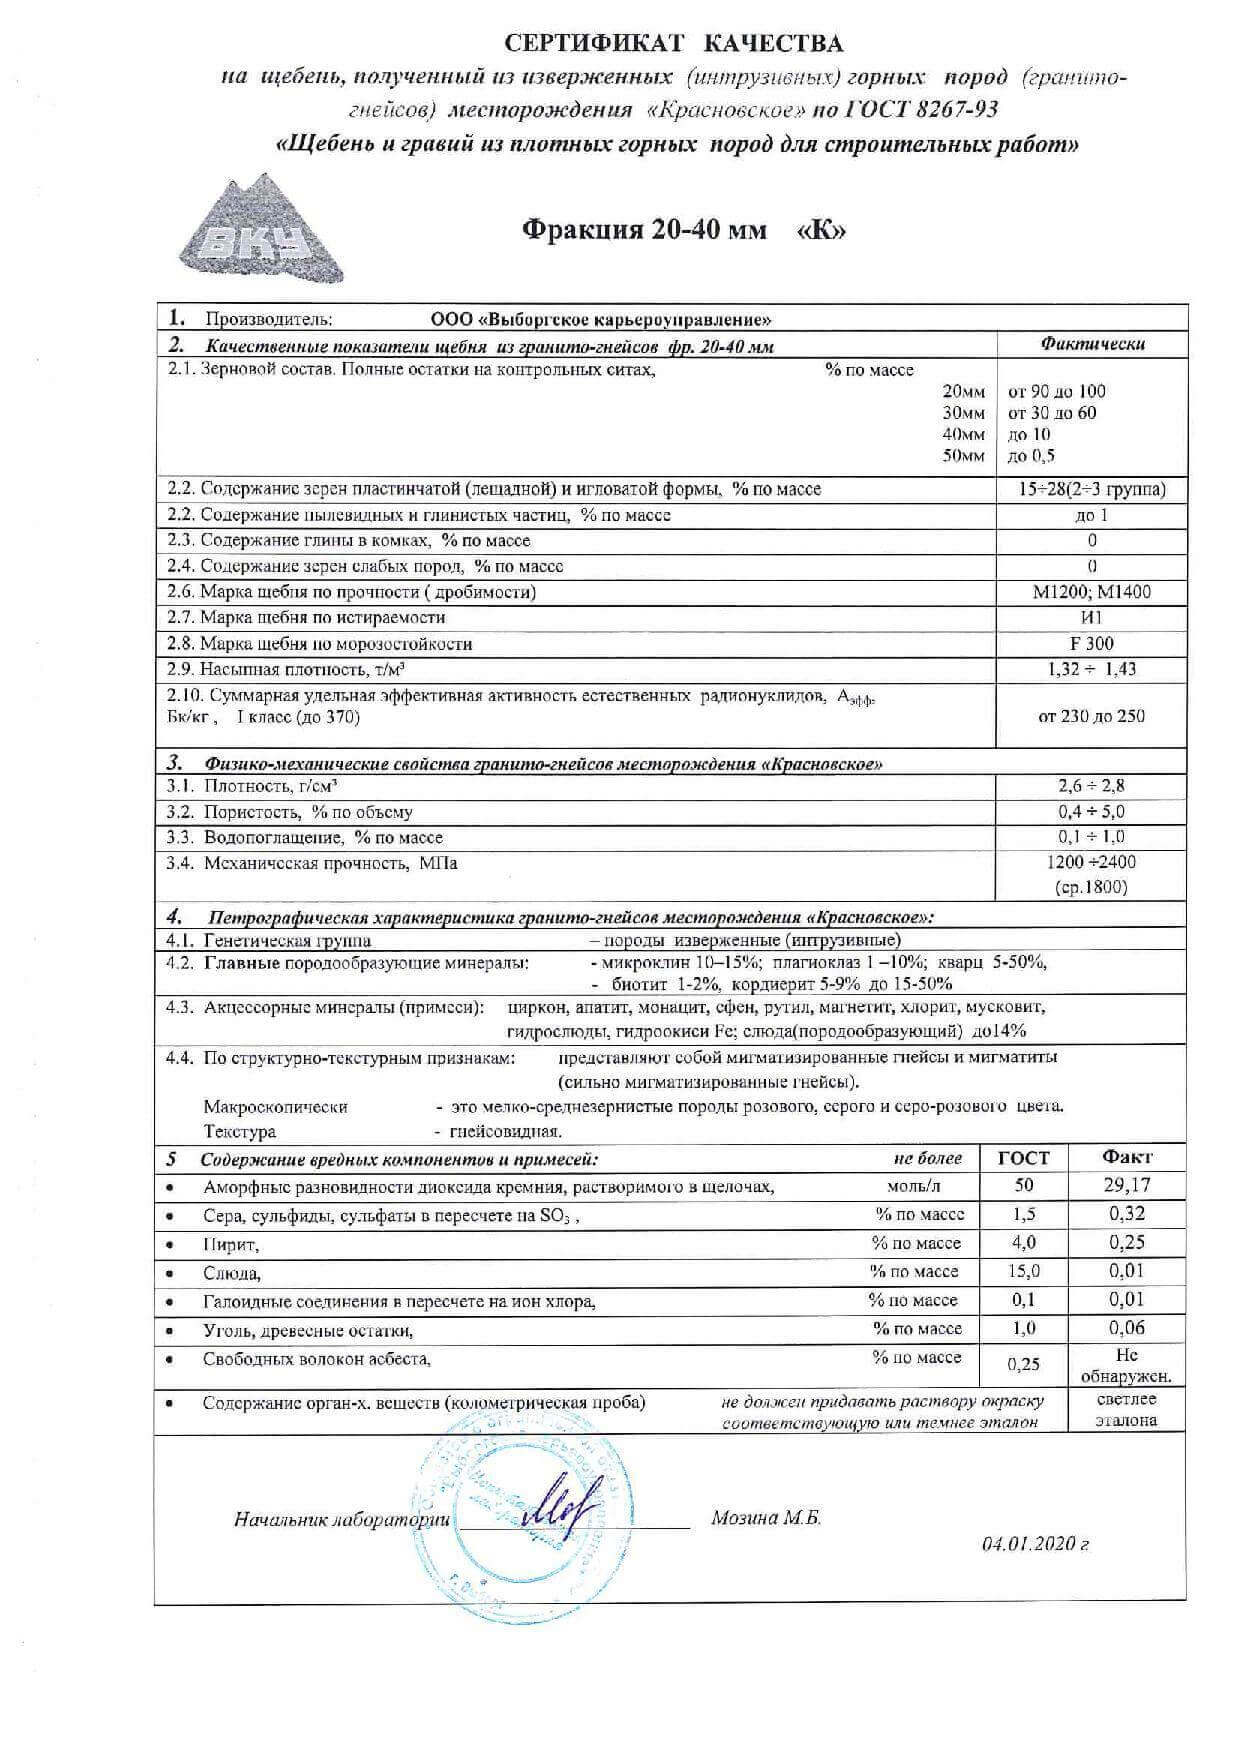 сертификат на щебень гравийный фр 20-40